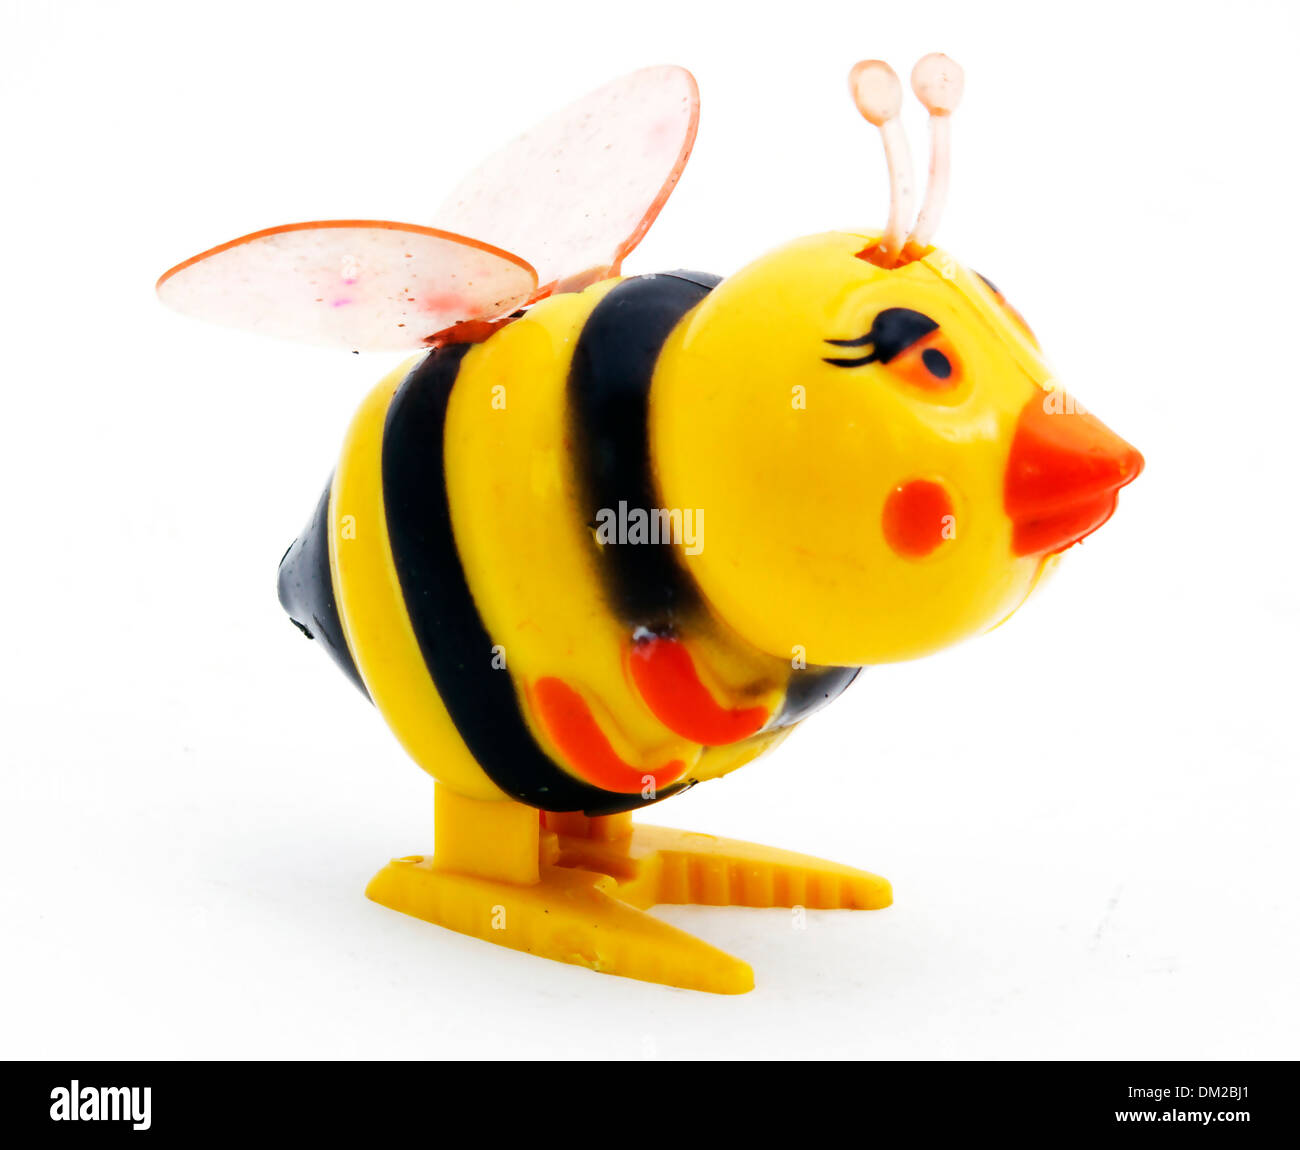 plastic toy bee Stock Photo - Alamy